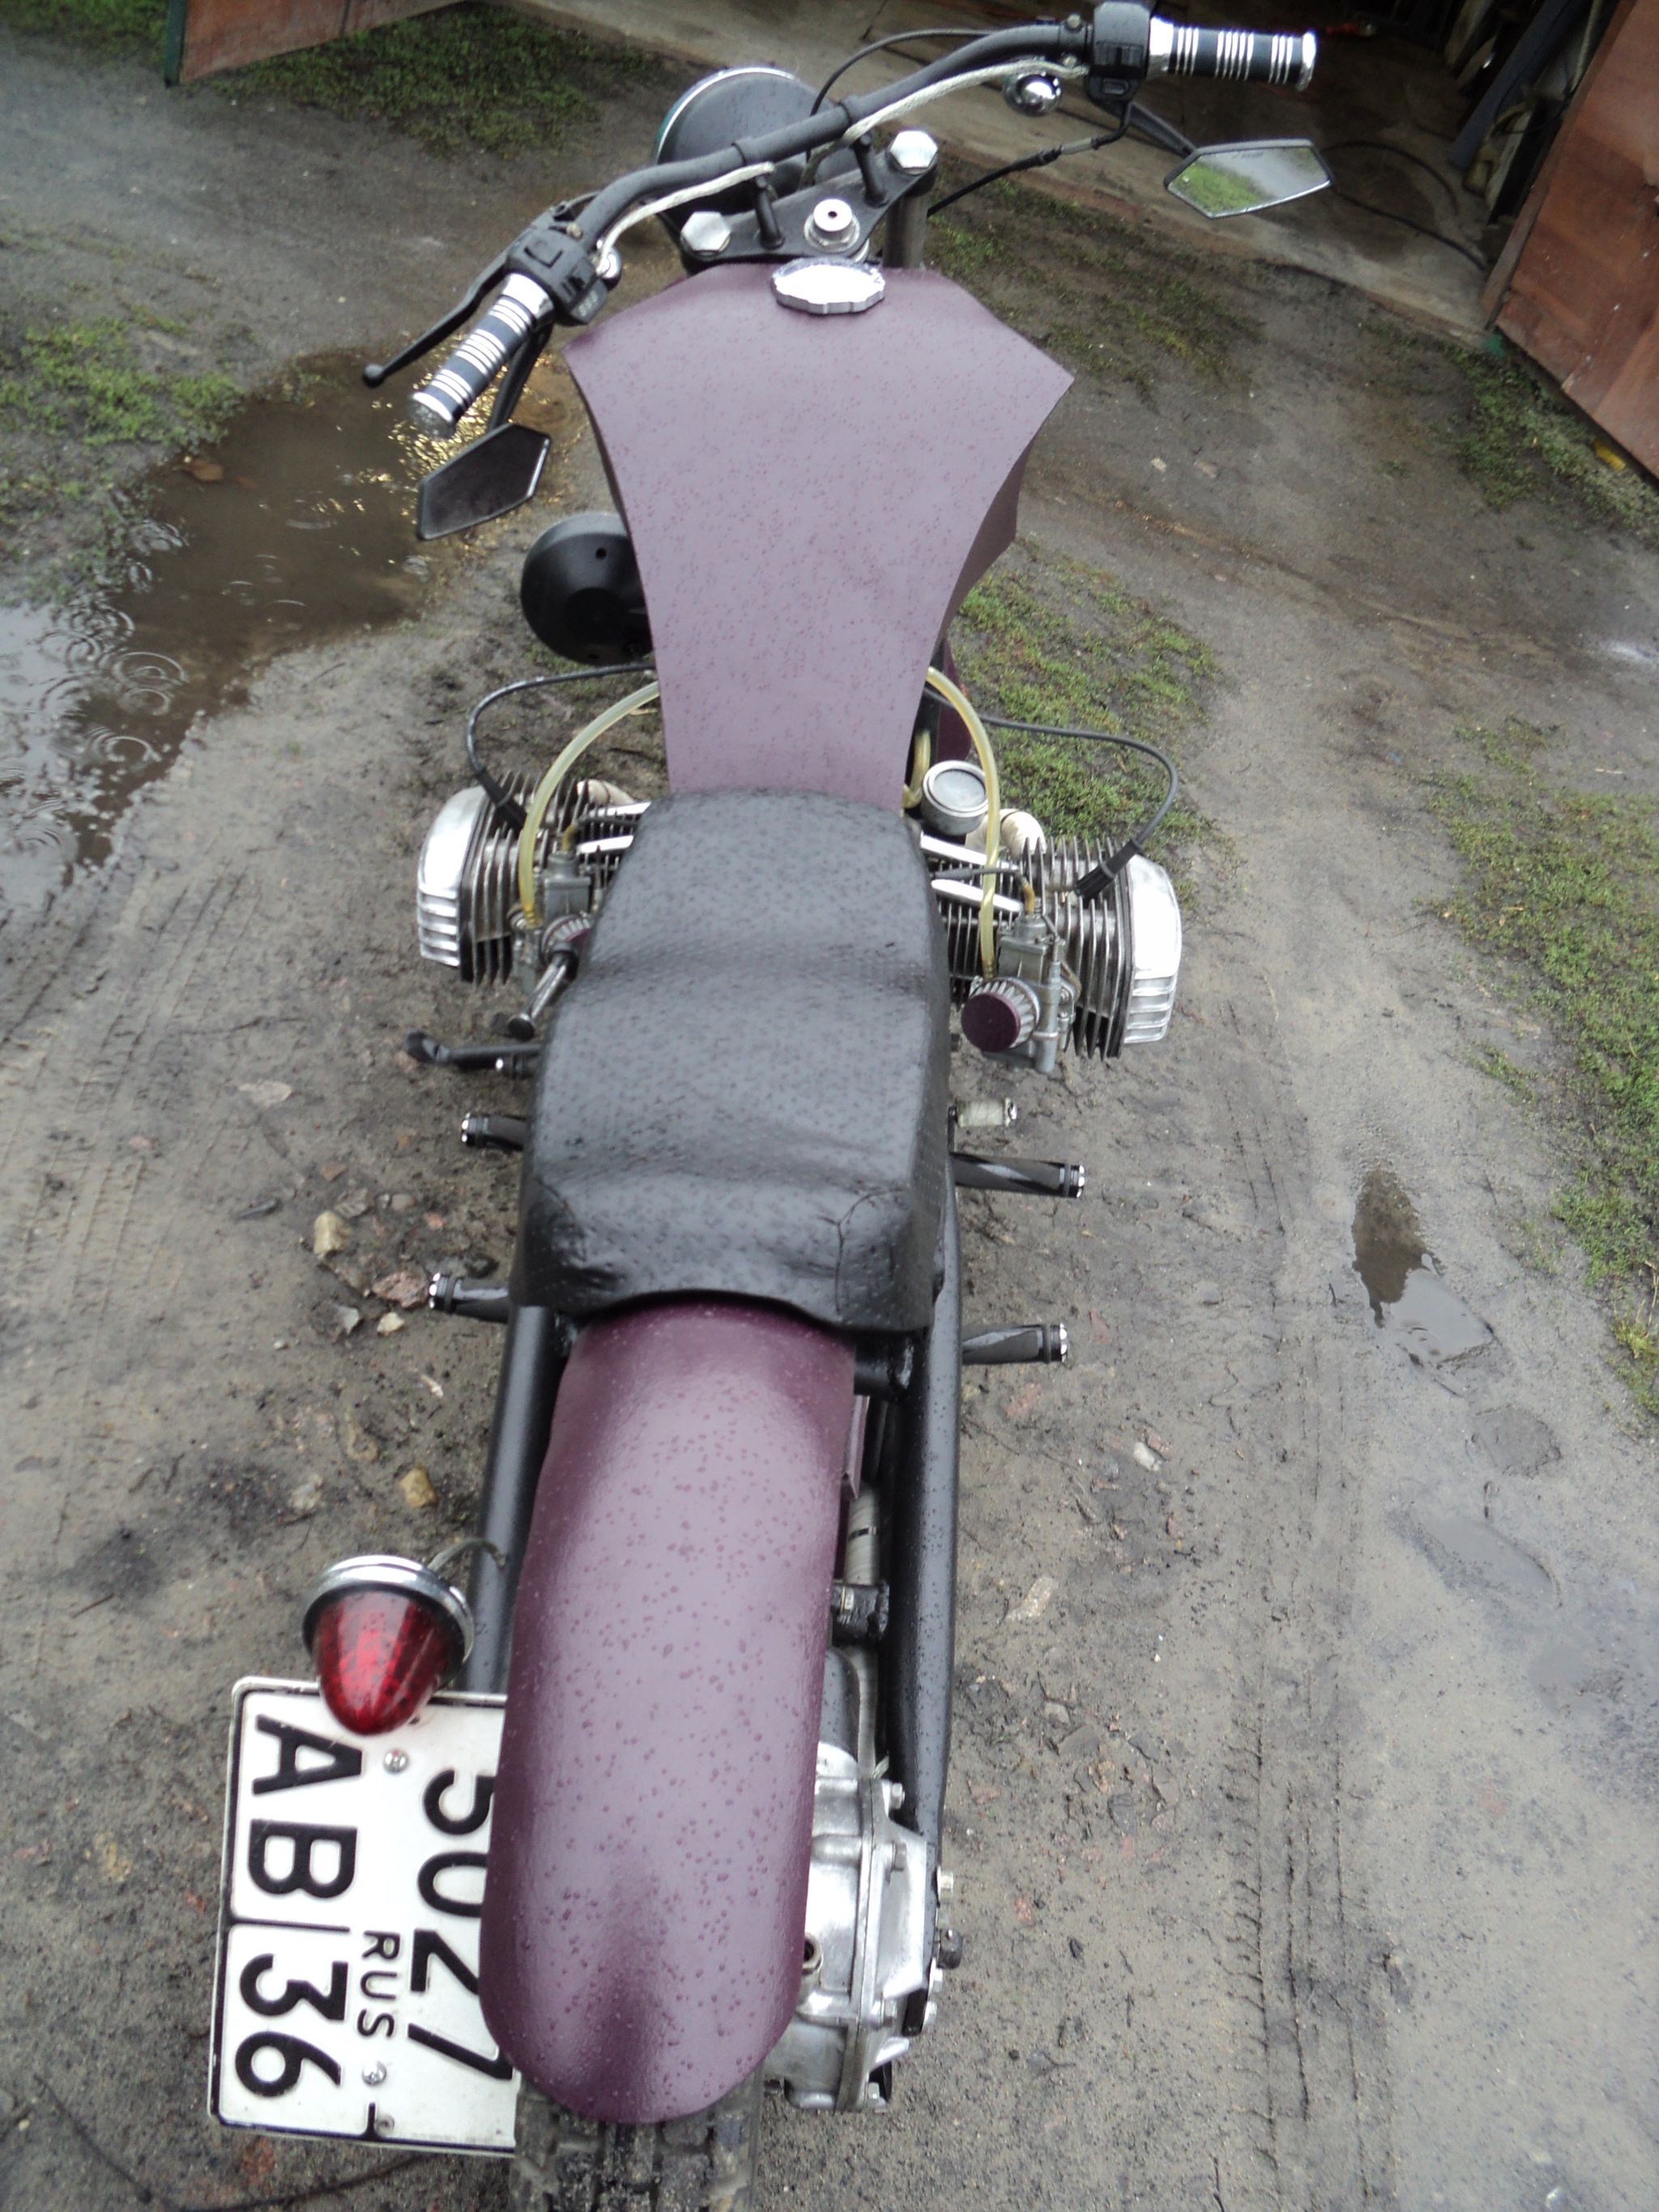 Тюнинг мотоцикла Урал с коляской своими руками: фото примеров тюнингованных байков